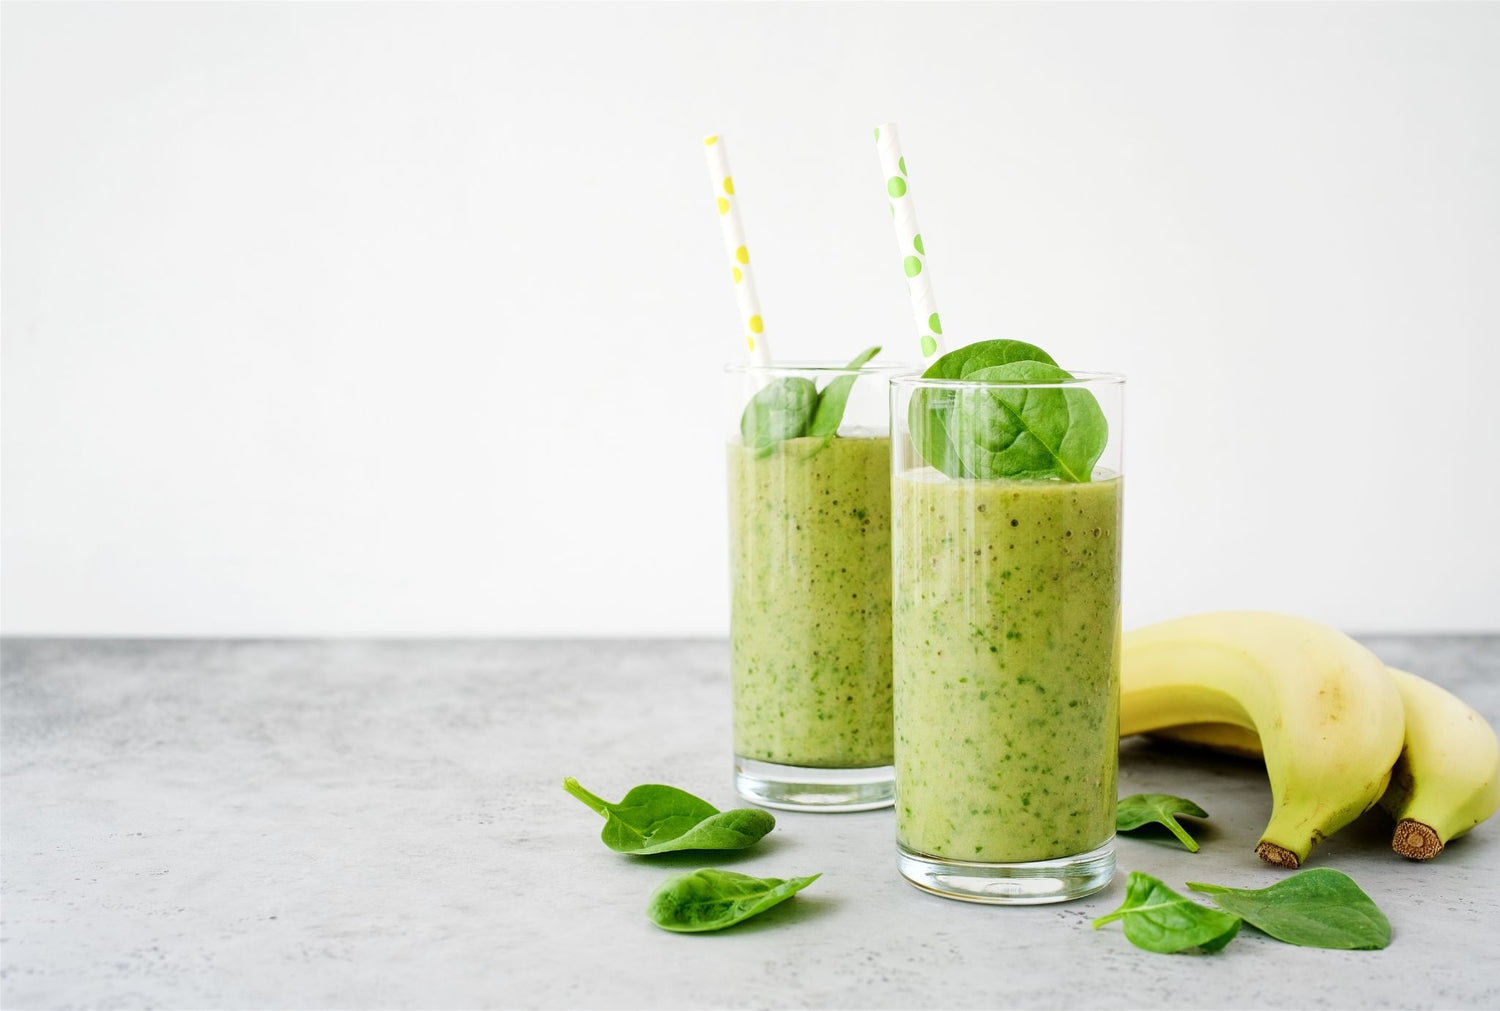 Kale / Avocado / Lemon Green Smoothie